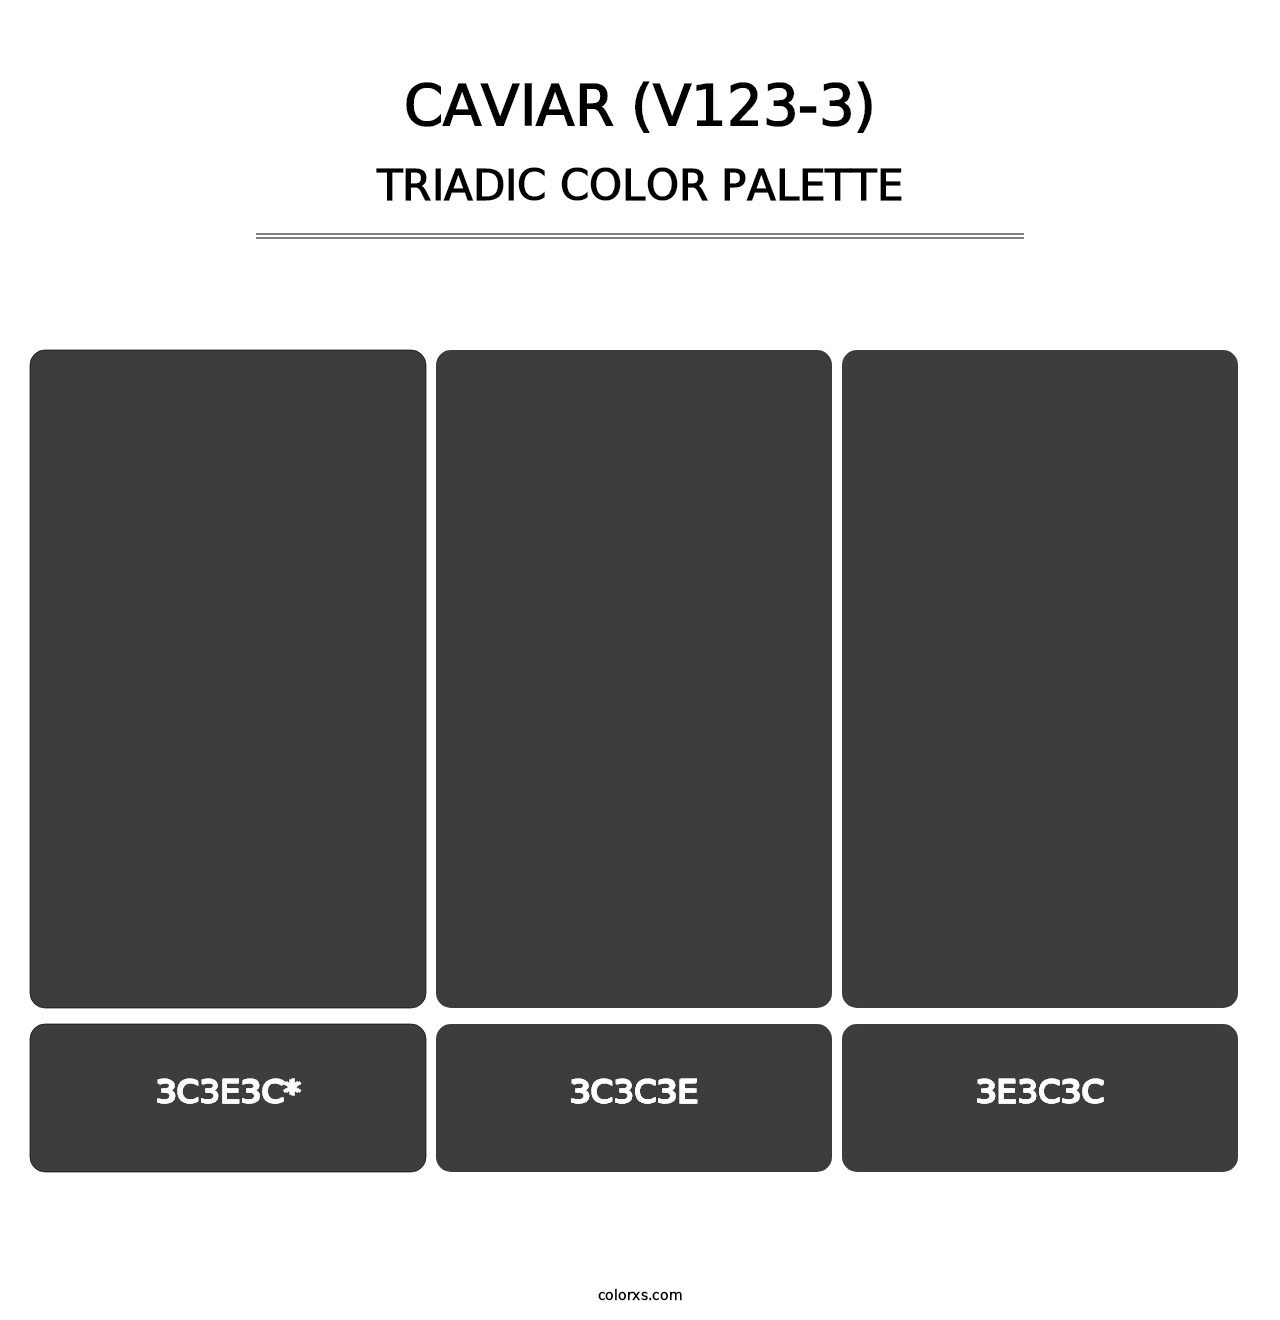 Caviar (V123-3) - Triadic Color Palette